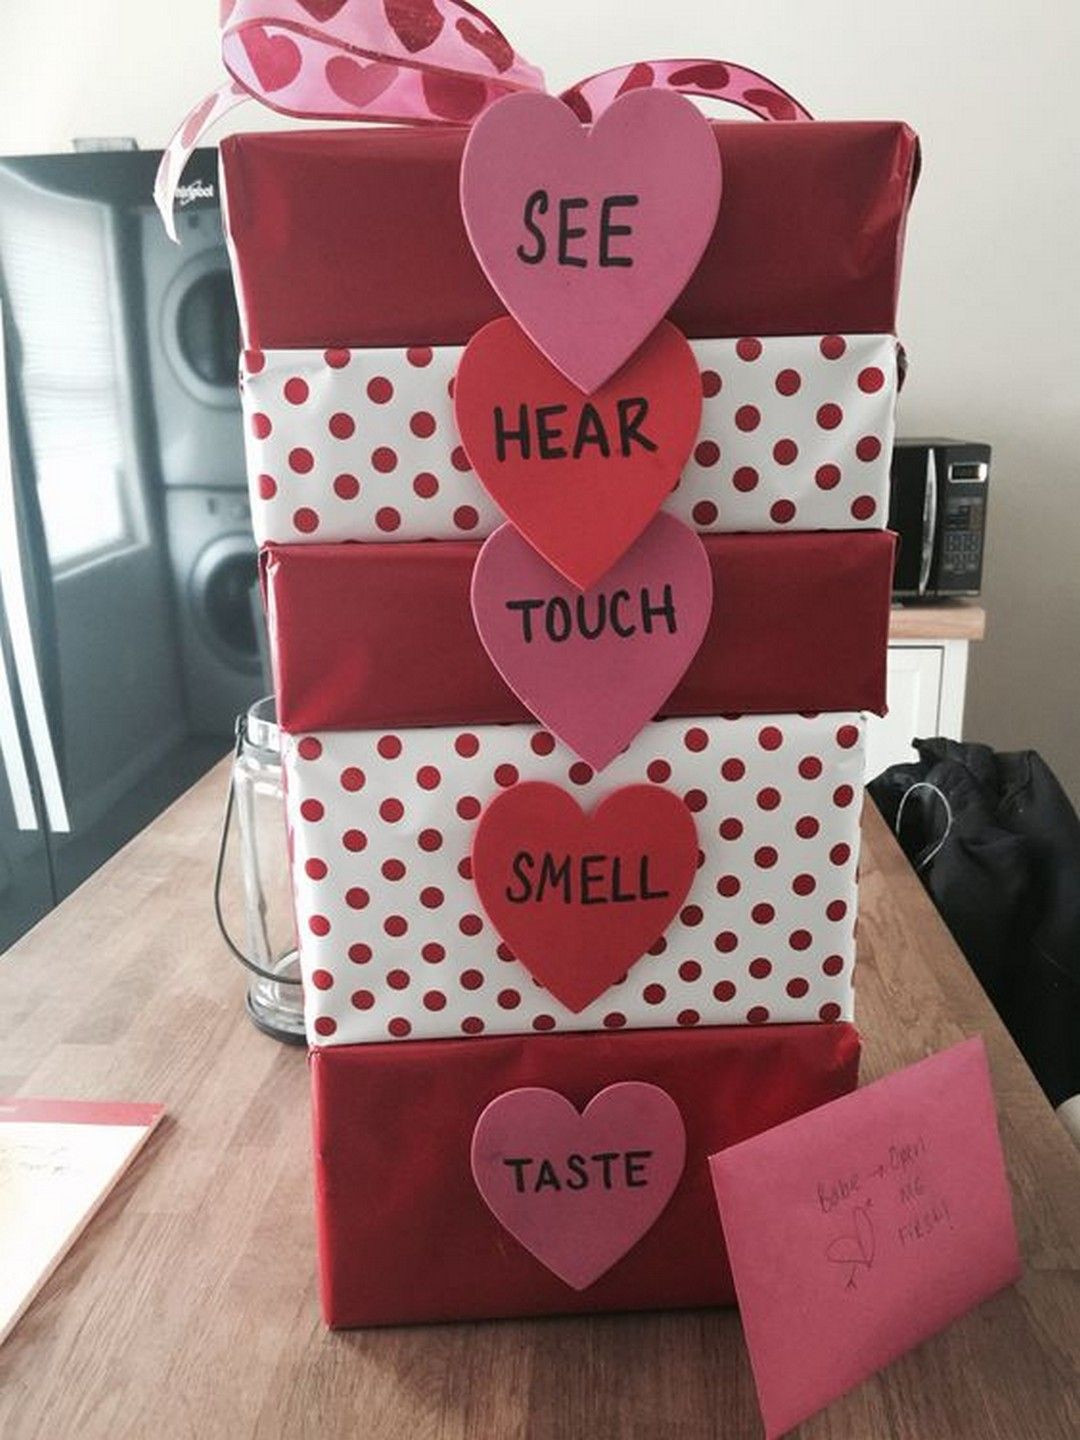 Gift Ideas For Boyfriend On Valentine'S Day
 Romantic DIY Valentines Day Gifts for Your Boyfriend or